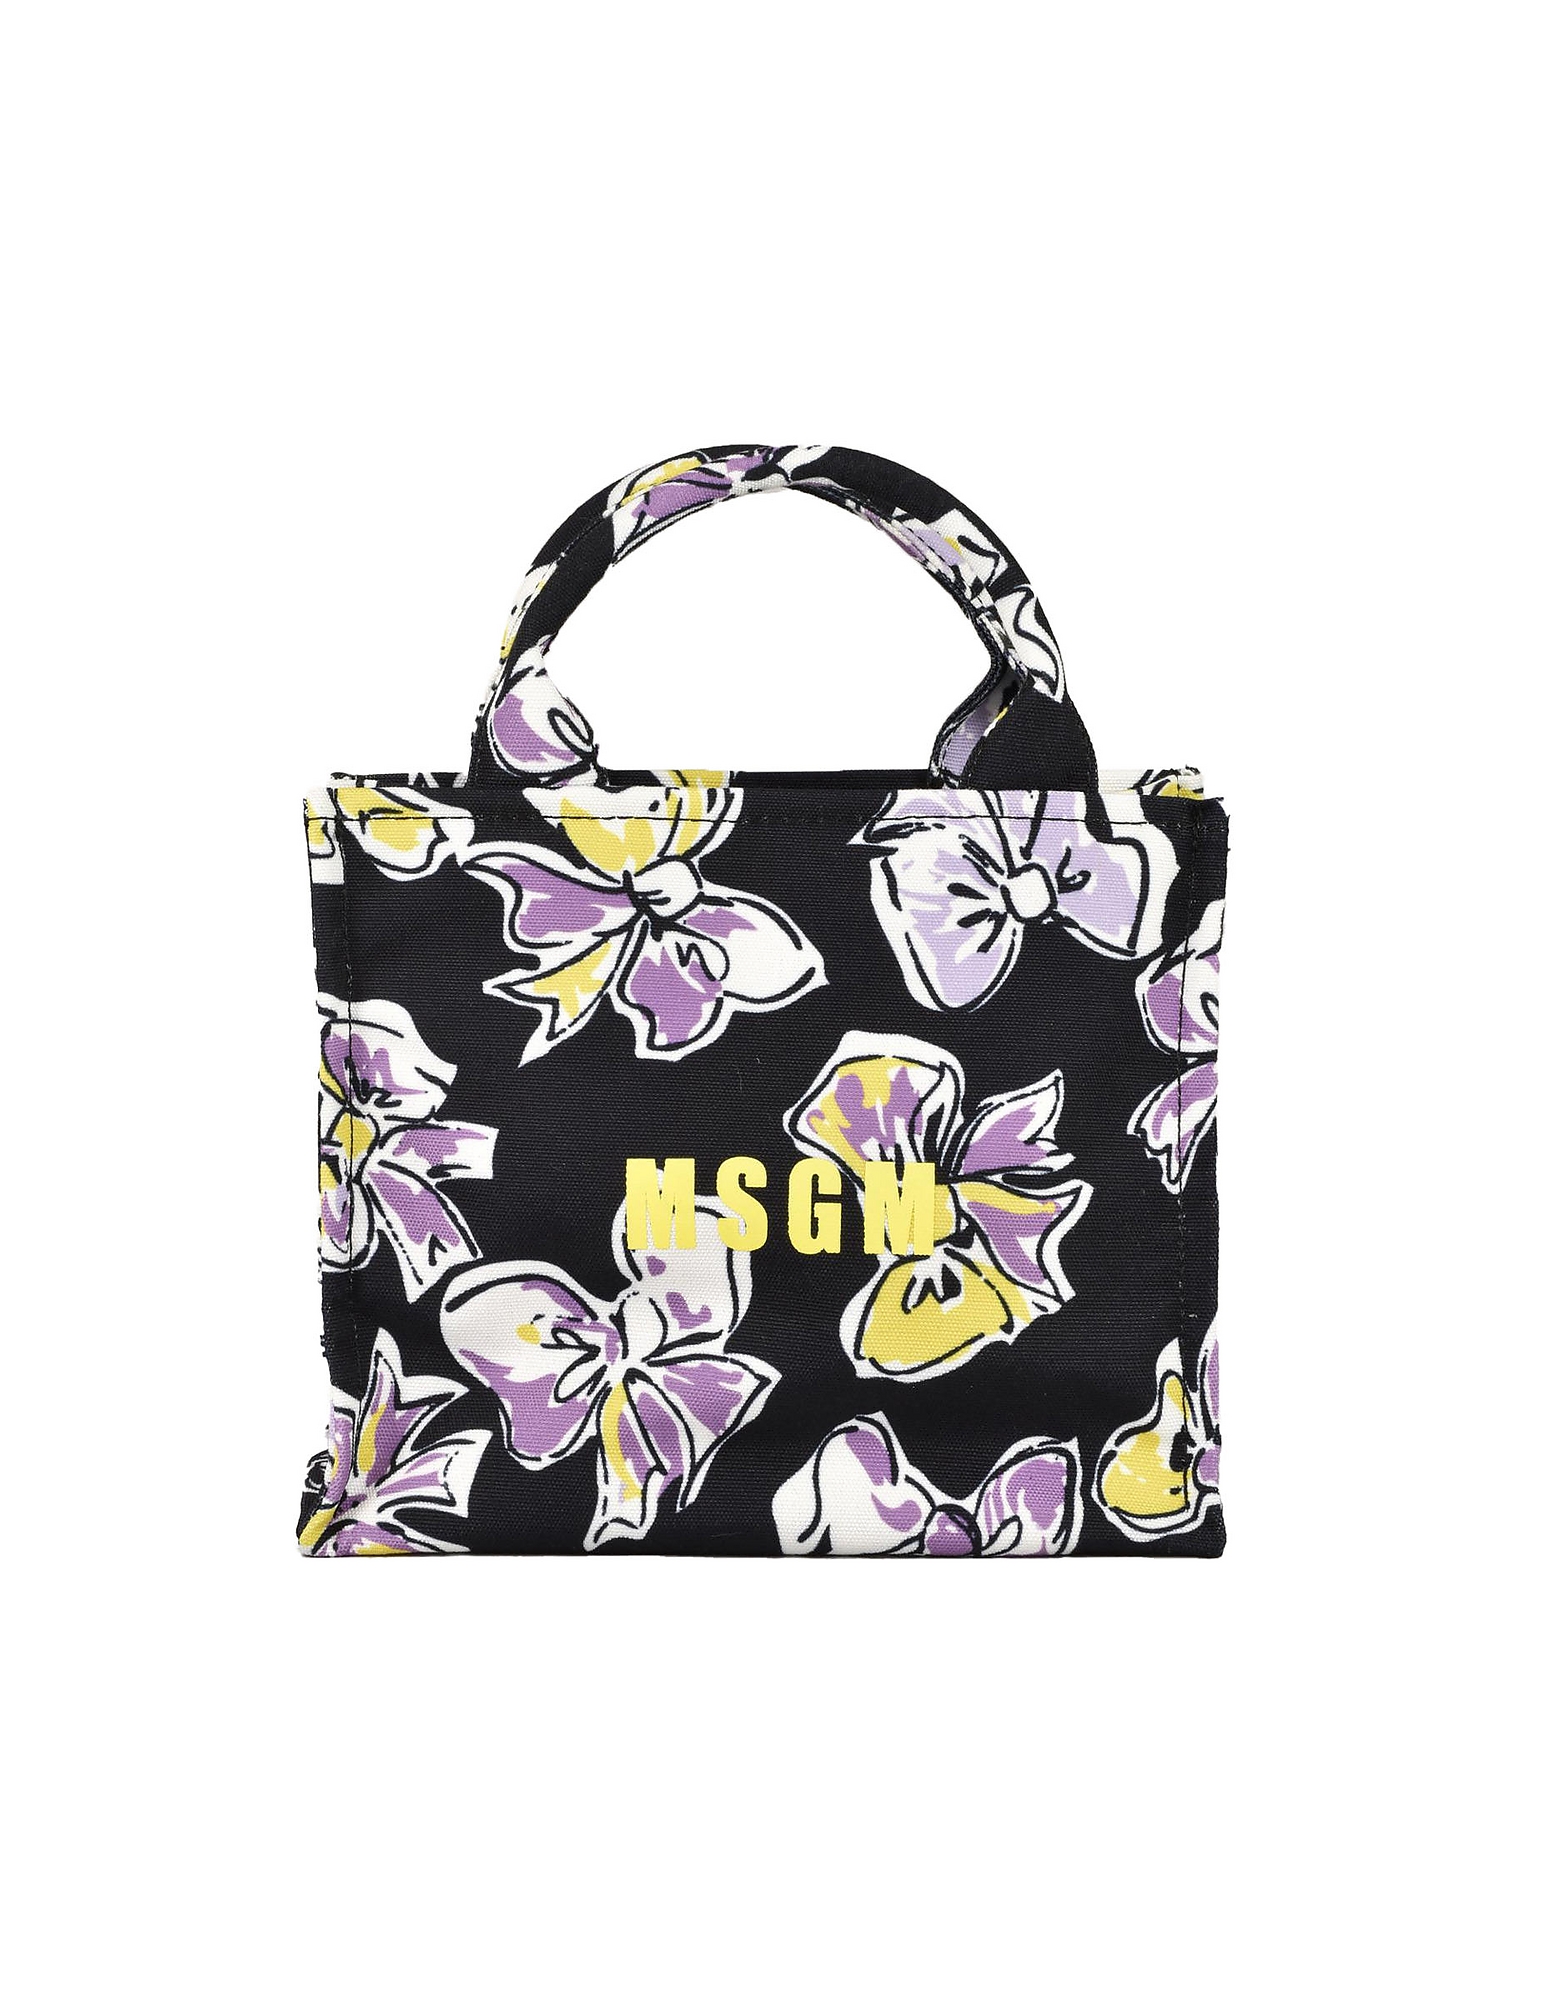 Msgm Designer Handbags Women's Nero/viola Handbag